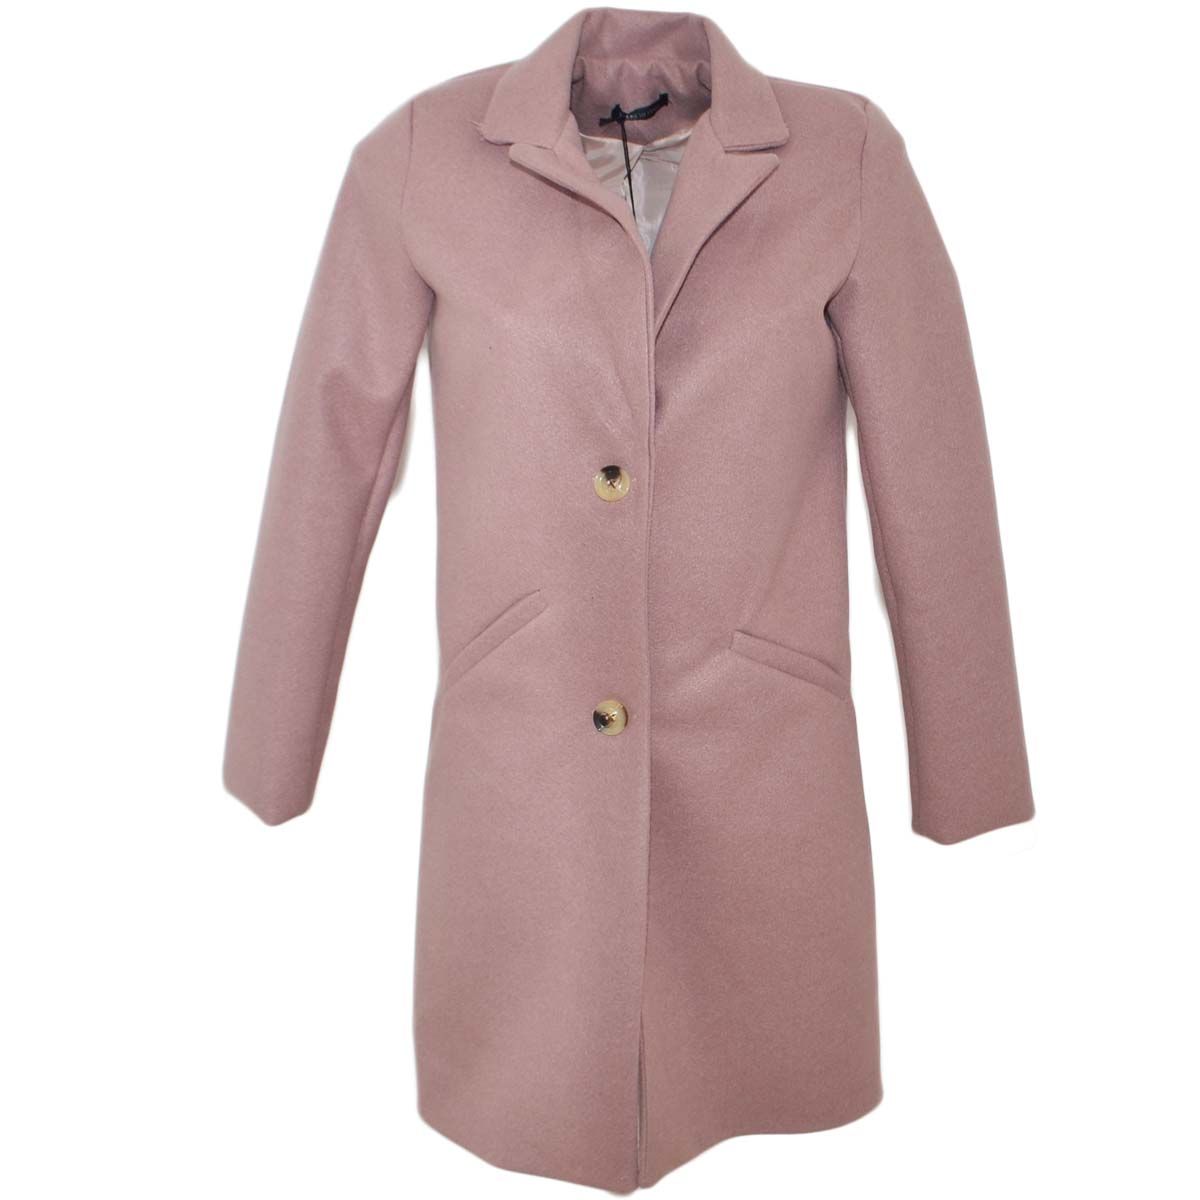 Cappottino giacca donna invernale in lana rasata rosa taglio maschile a 3 bottini avvitato slim fit tendenza moda